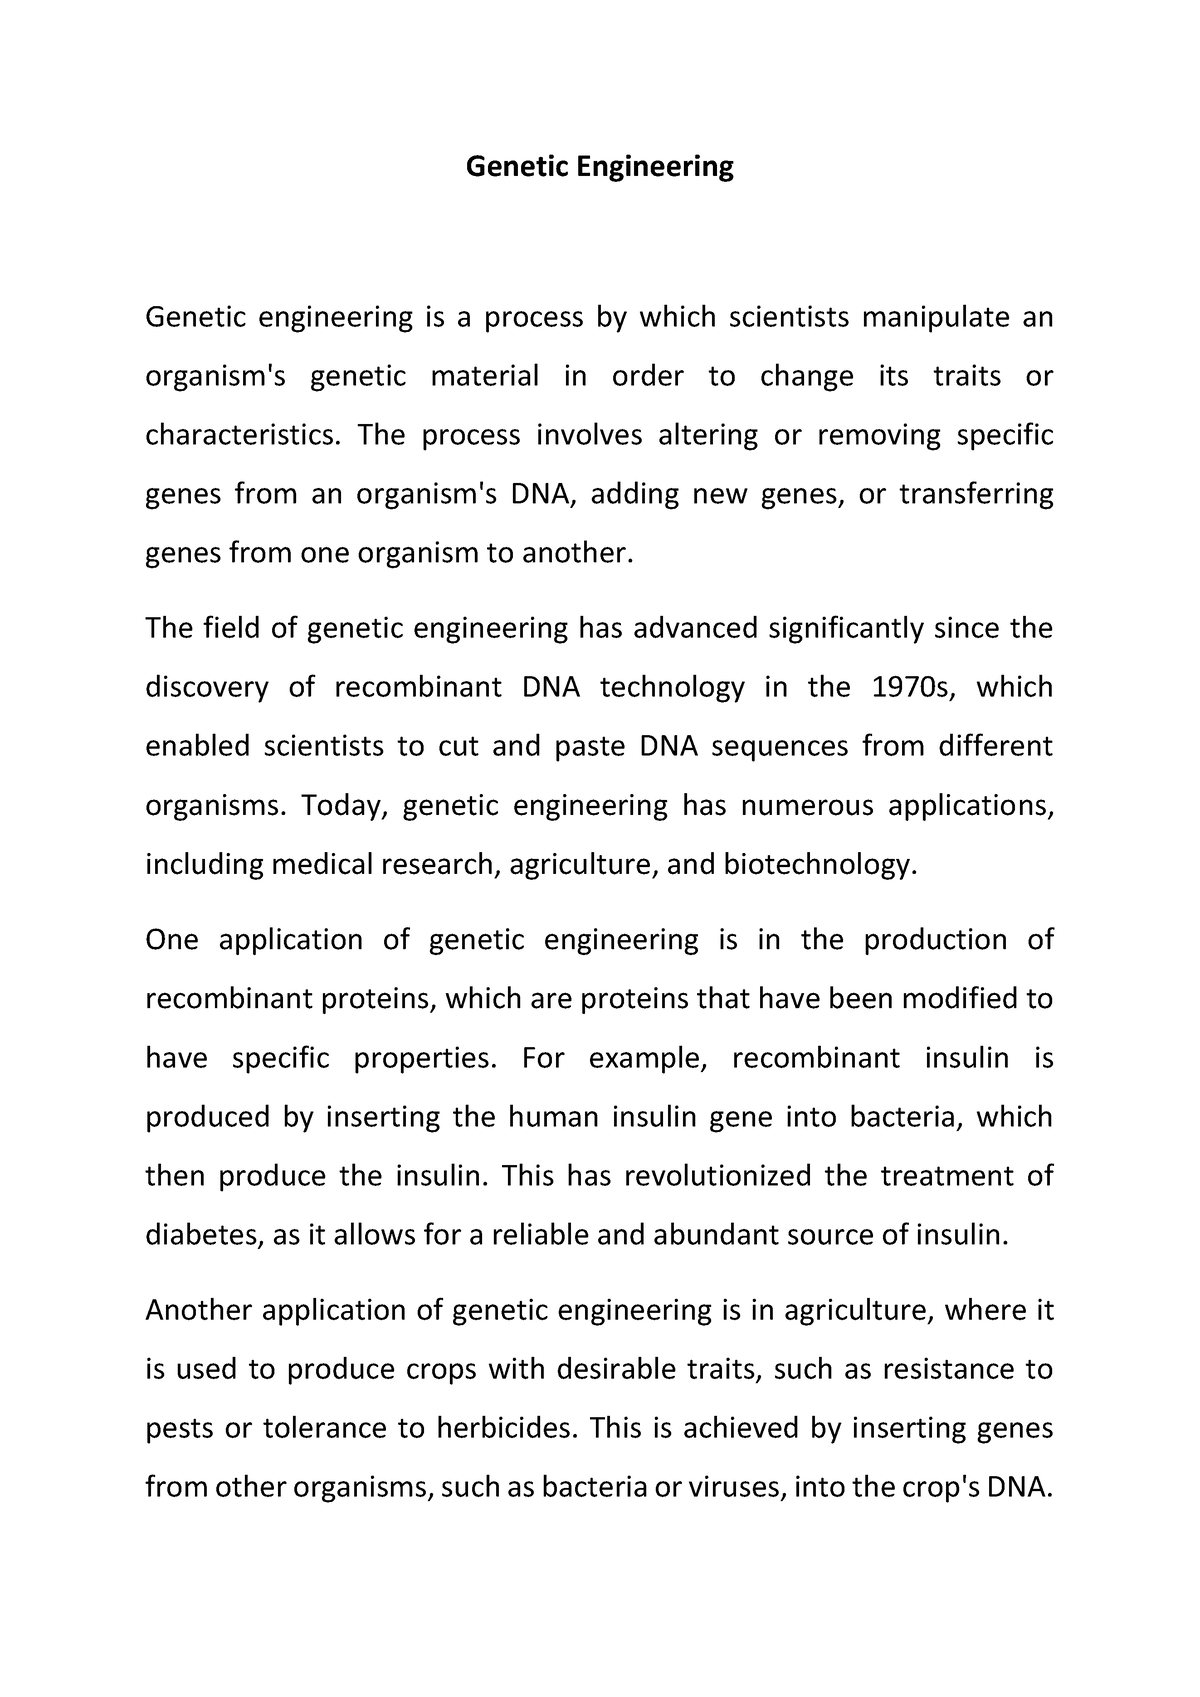 thesis on genetic engineering